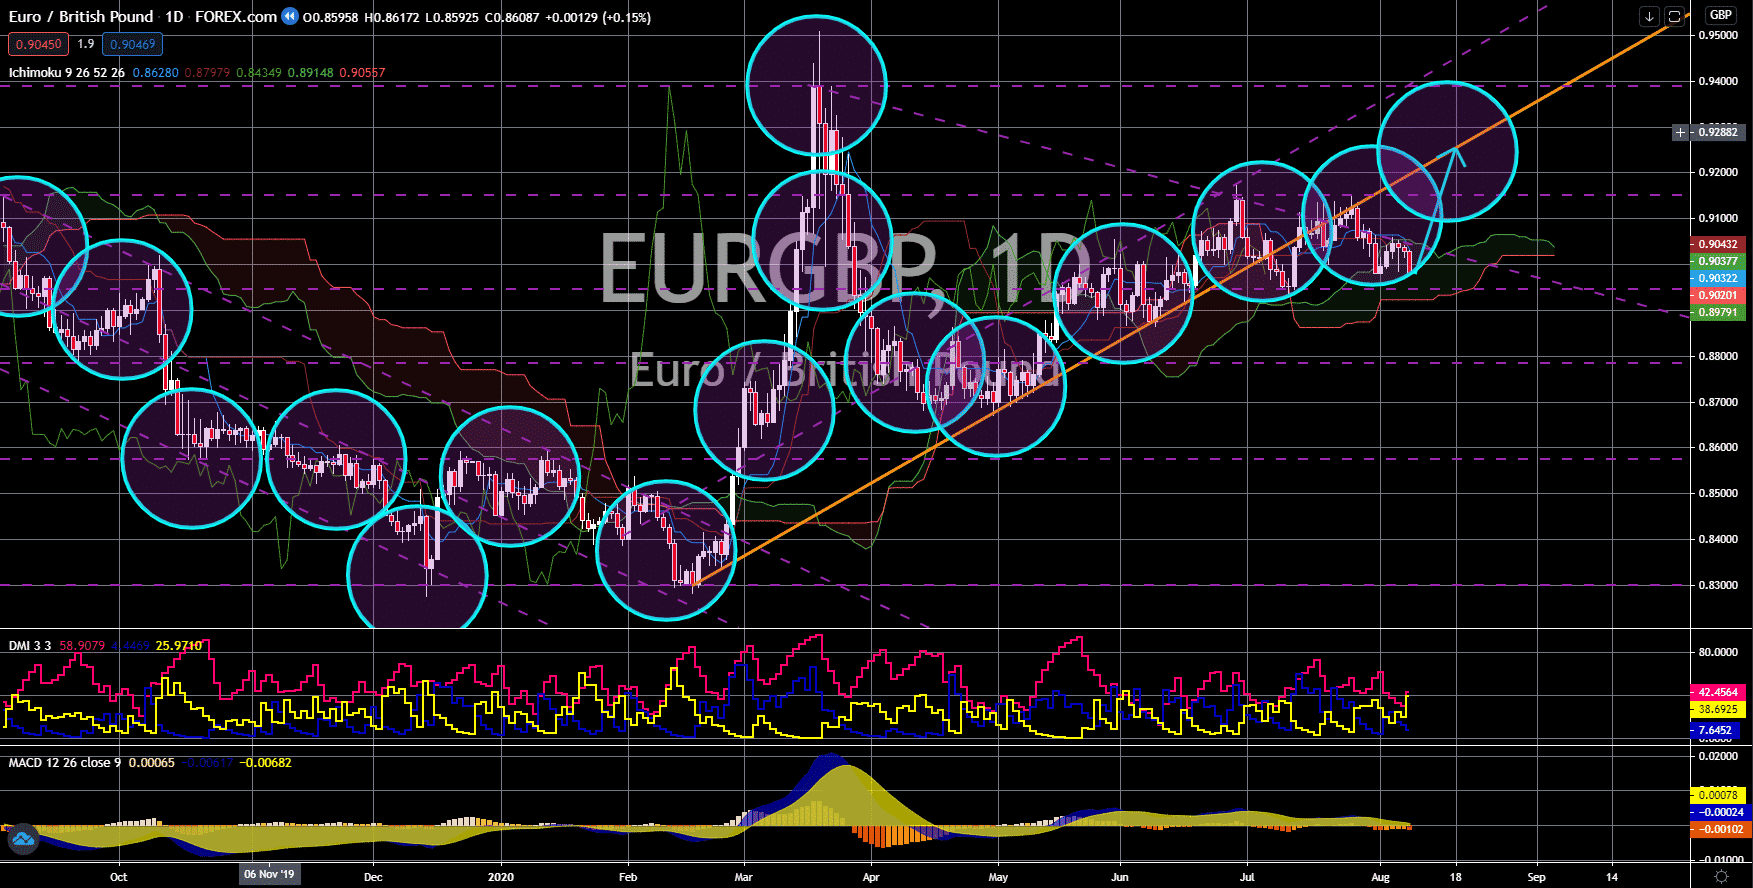 FinanceBrokerage - Notícias do Mercado: EUR/GBP Gráfico